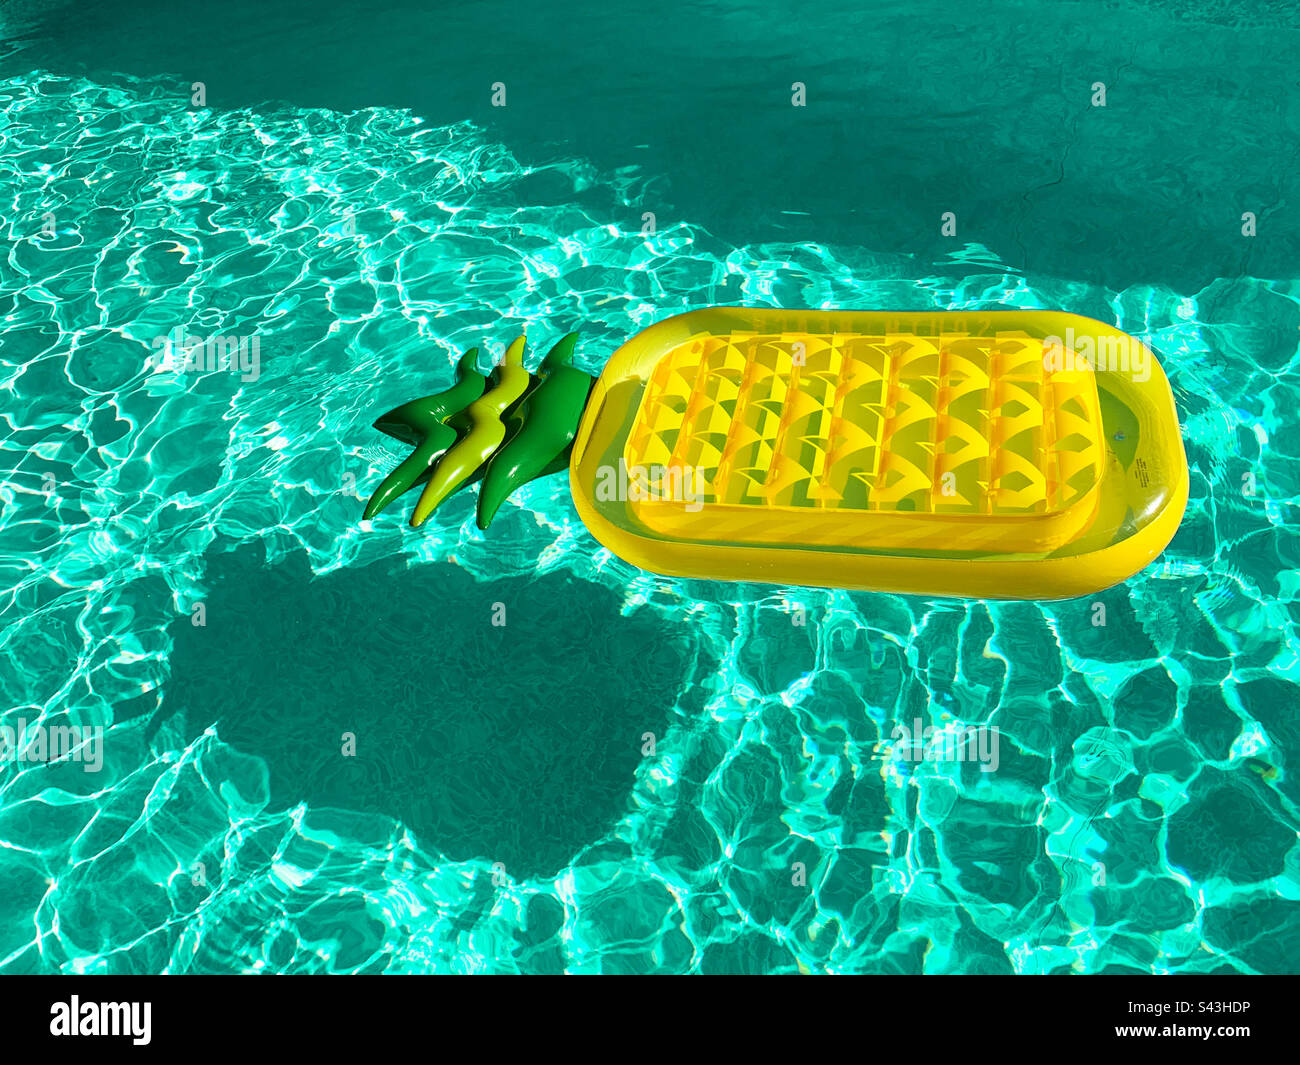 Blick aus einem hohen Winkel auf eine aufblasbare anananasförmige Matratze, die an einem sonnigen Tag im Swimmingpool schwimmt Stockfoto